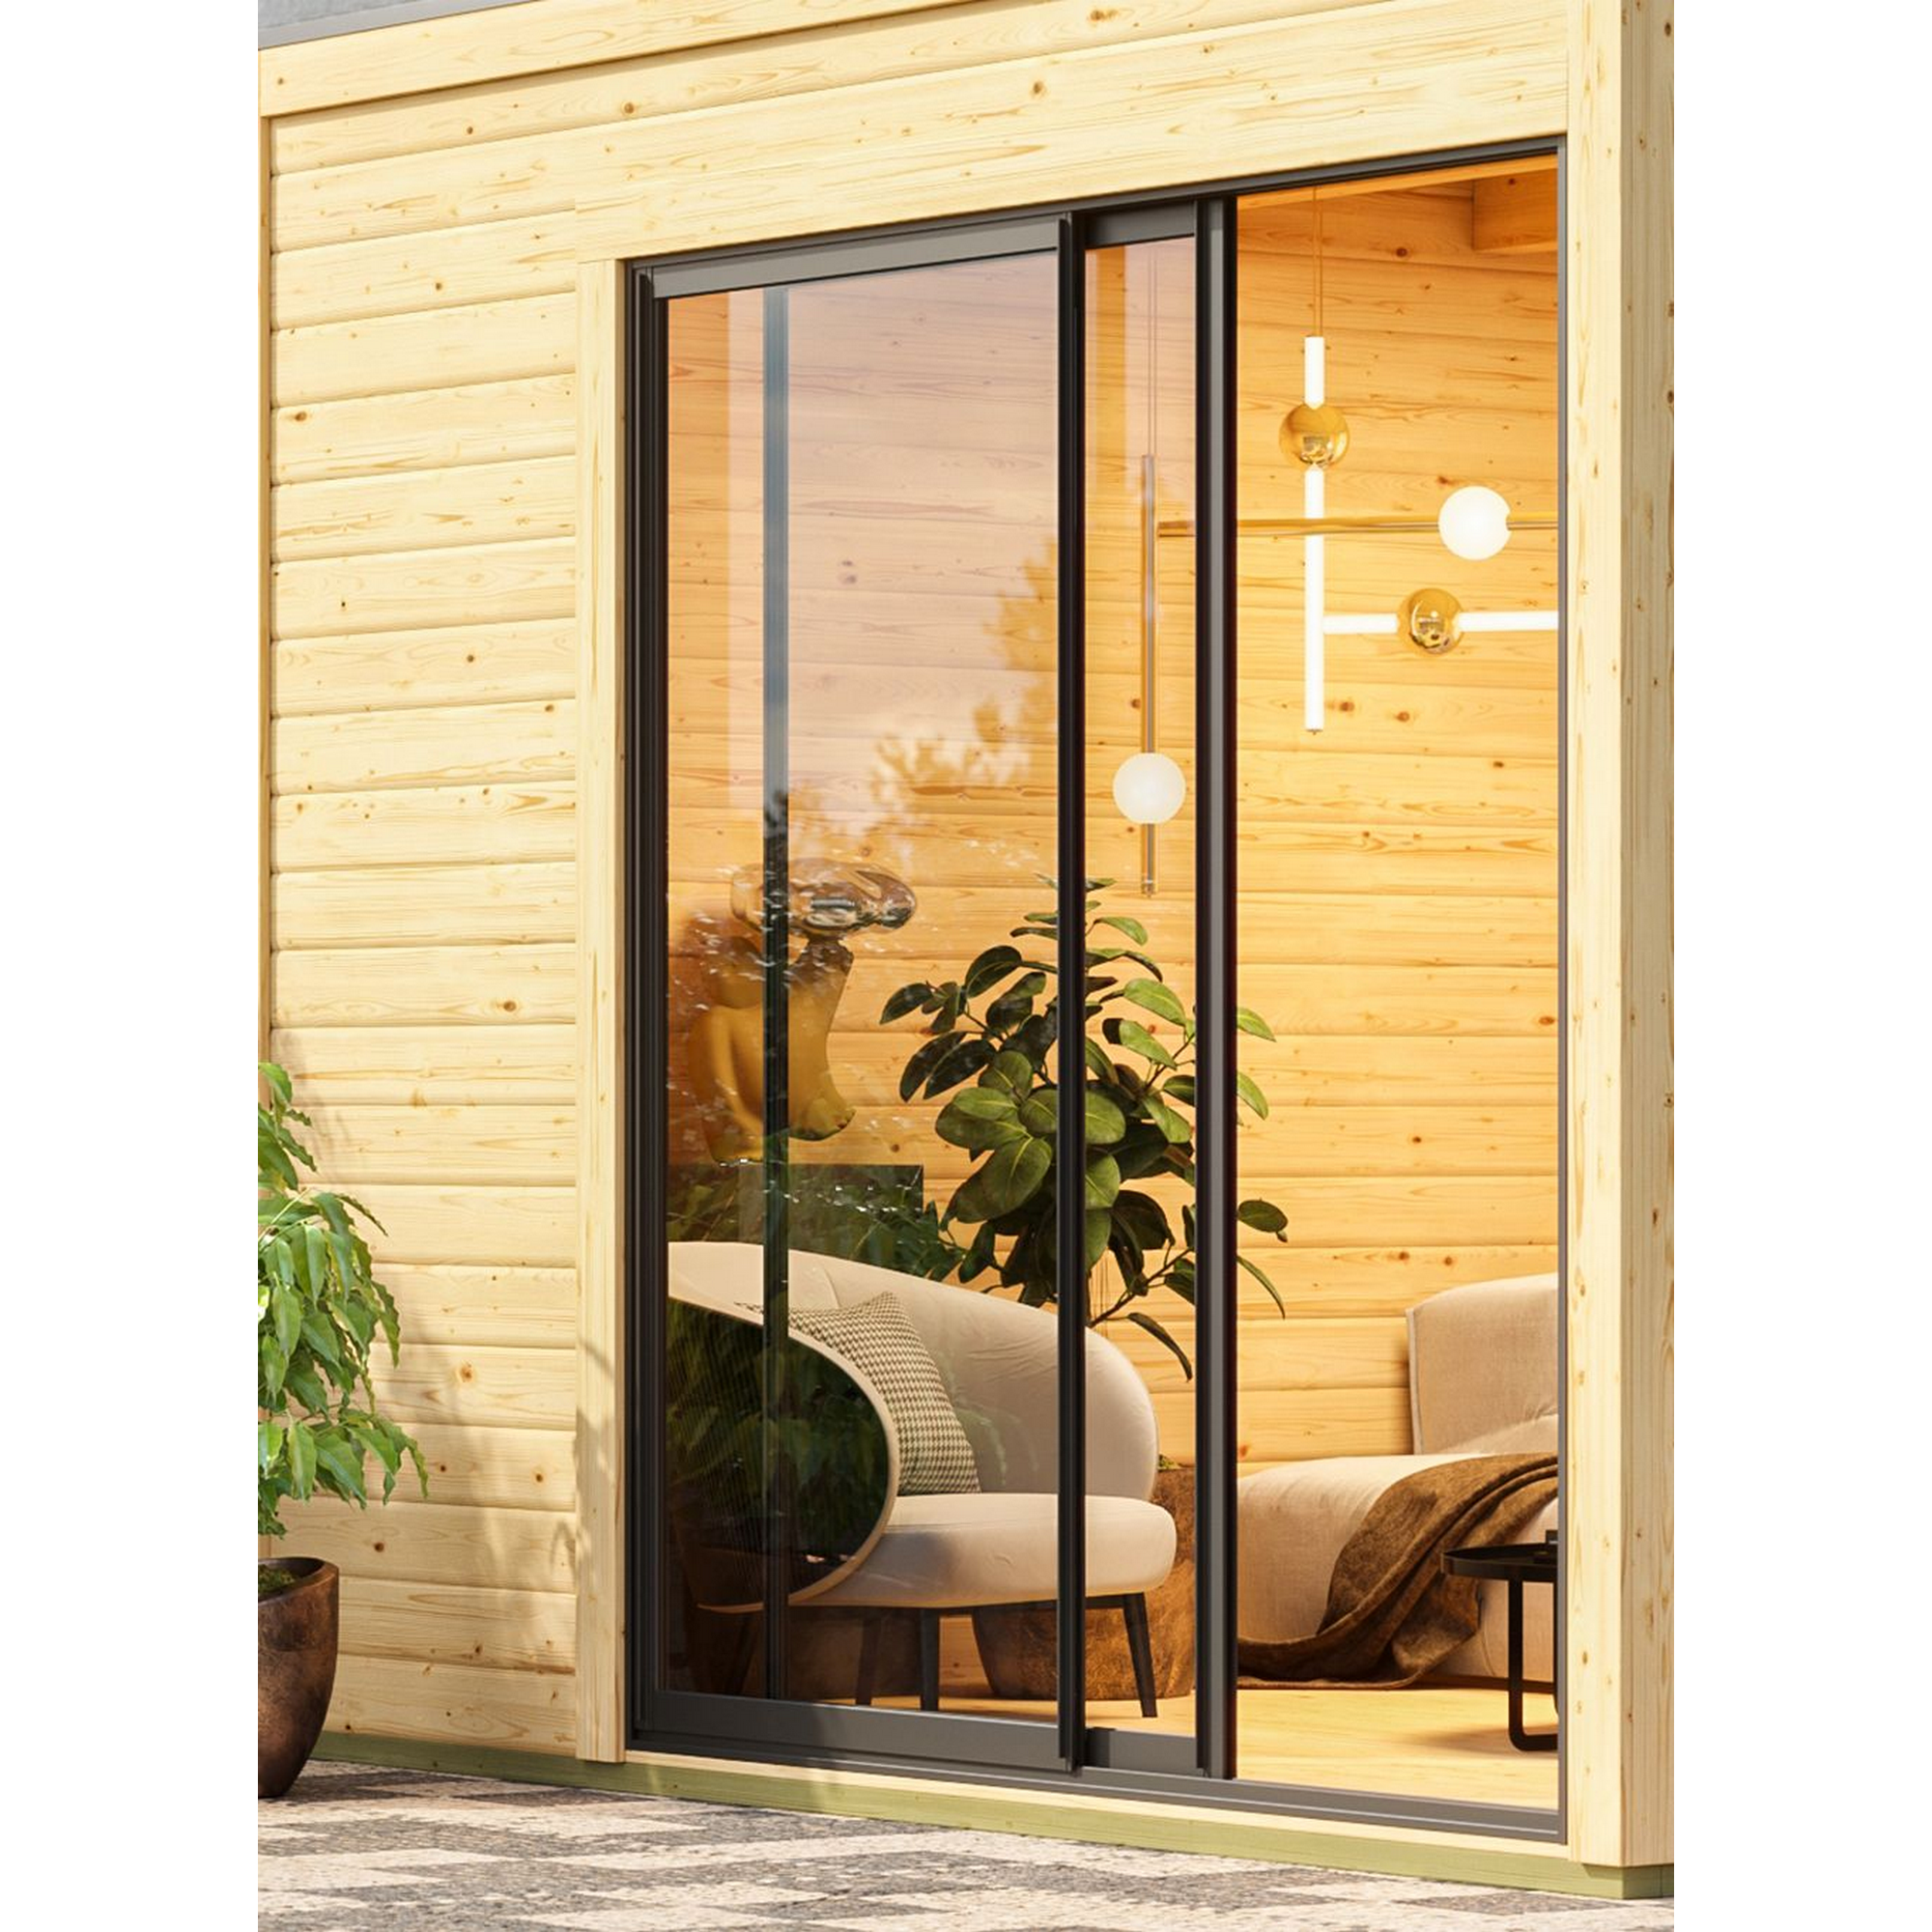 Gartenhaus mit Sauna 'Enrique 1 Variante B' naturbelassen 9 kW Ofen externe Steuerung 308 x 308 x 242 cm + product picture